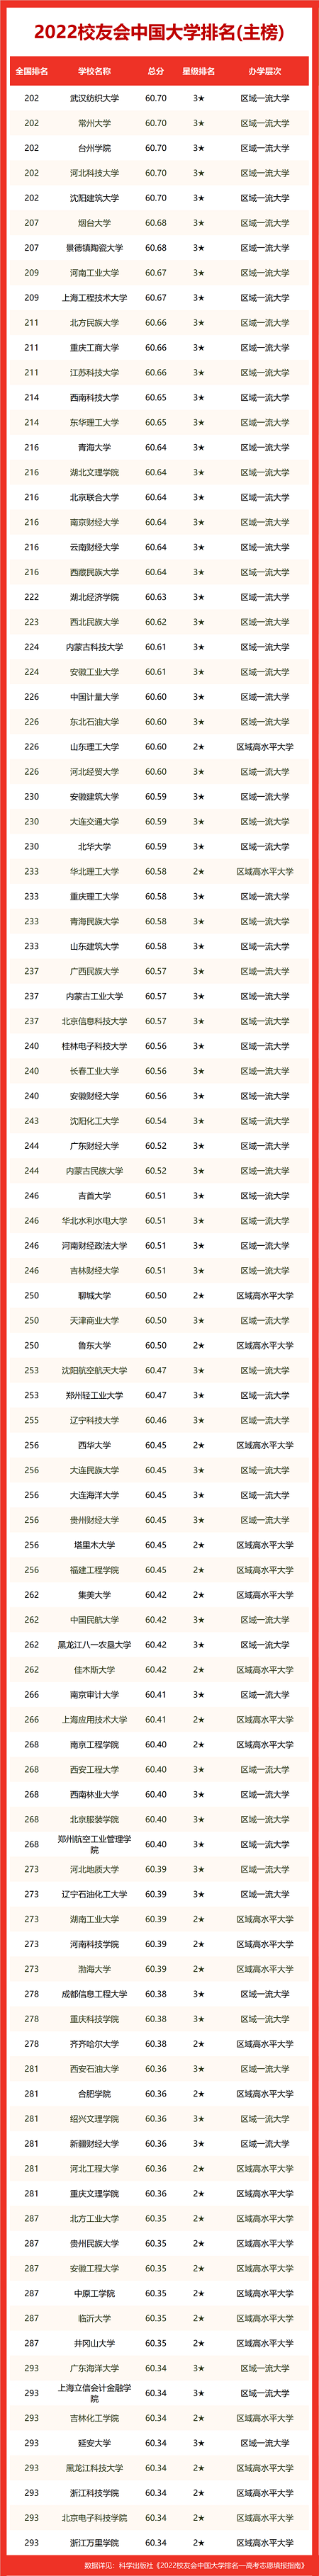 2022中国大学排名榜最新公布前十是哪些大学